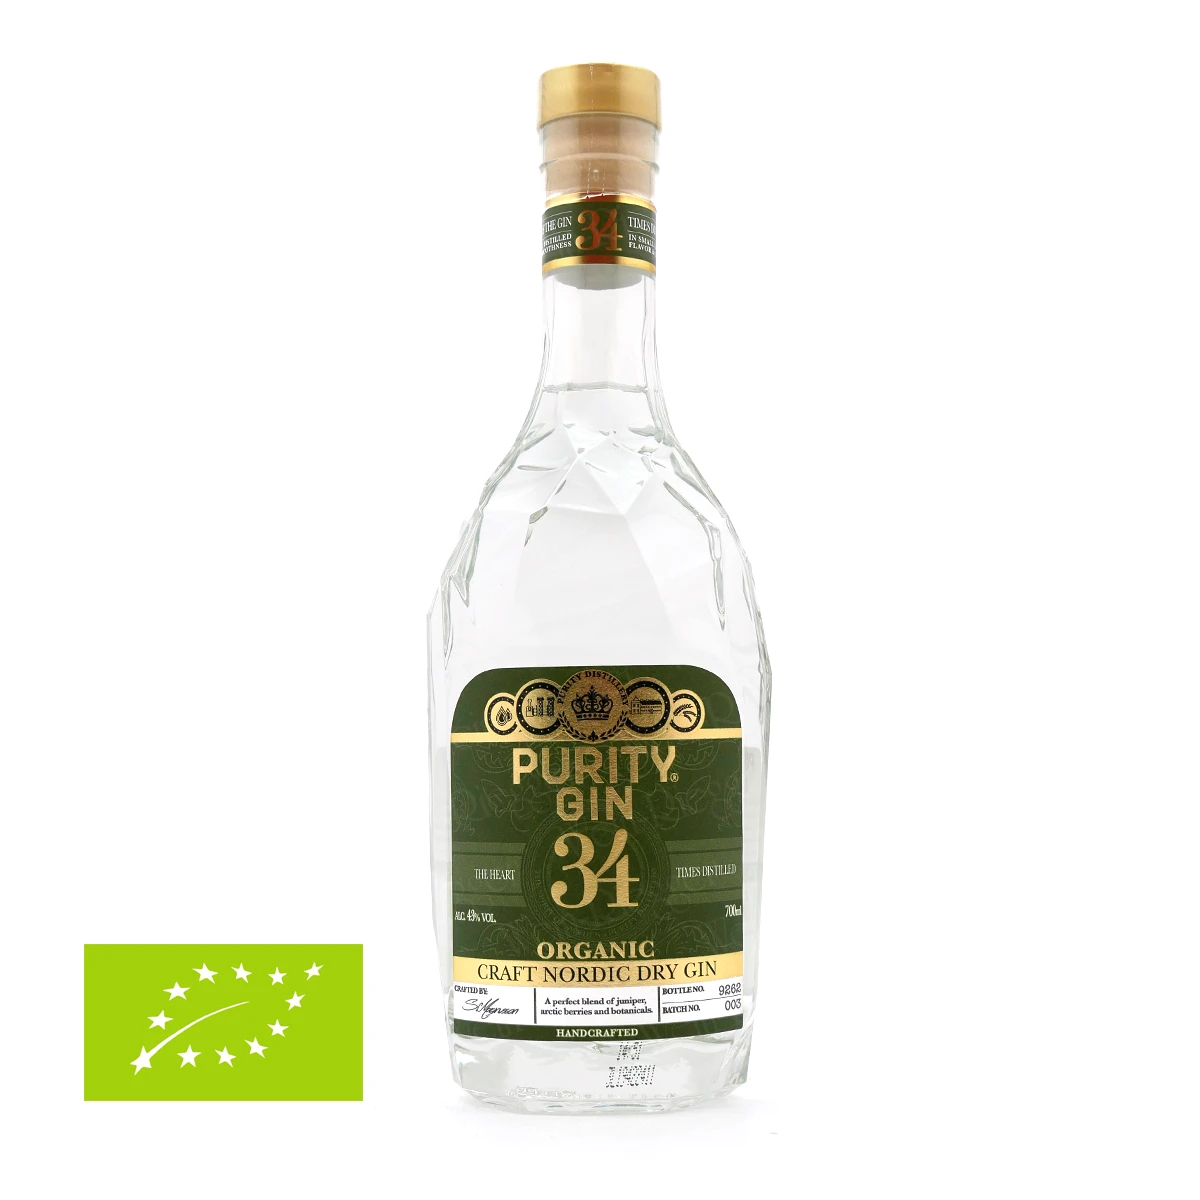 Purity Gin 34 Craft Nordic DRY GIN Organic